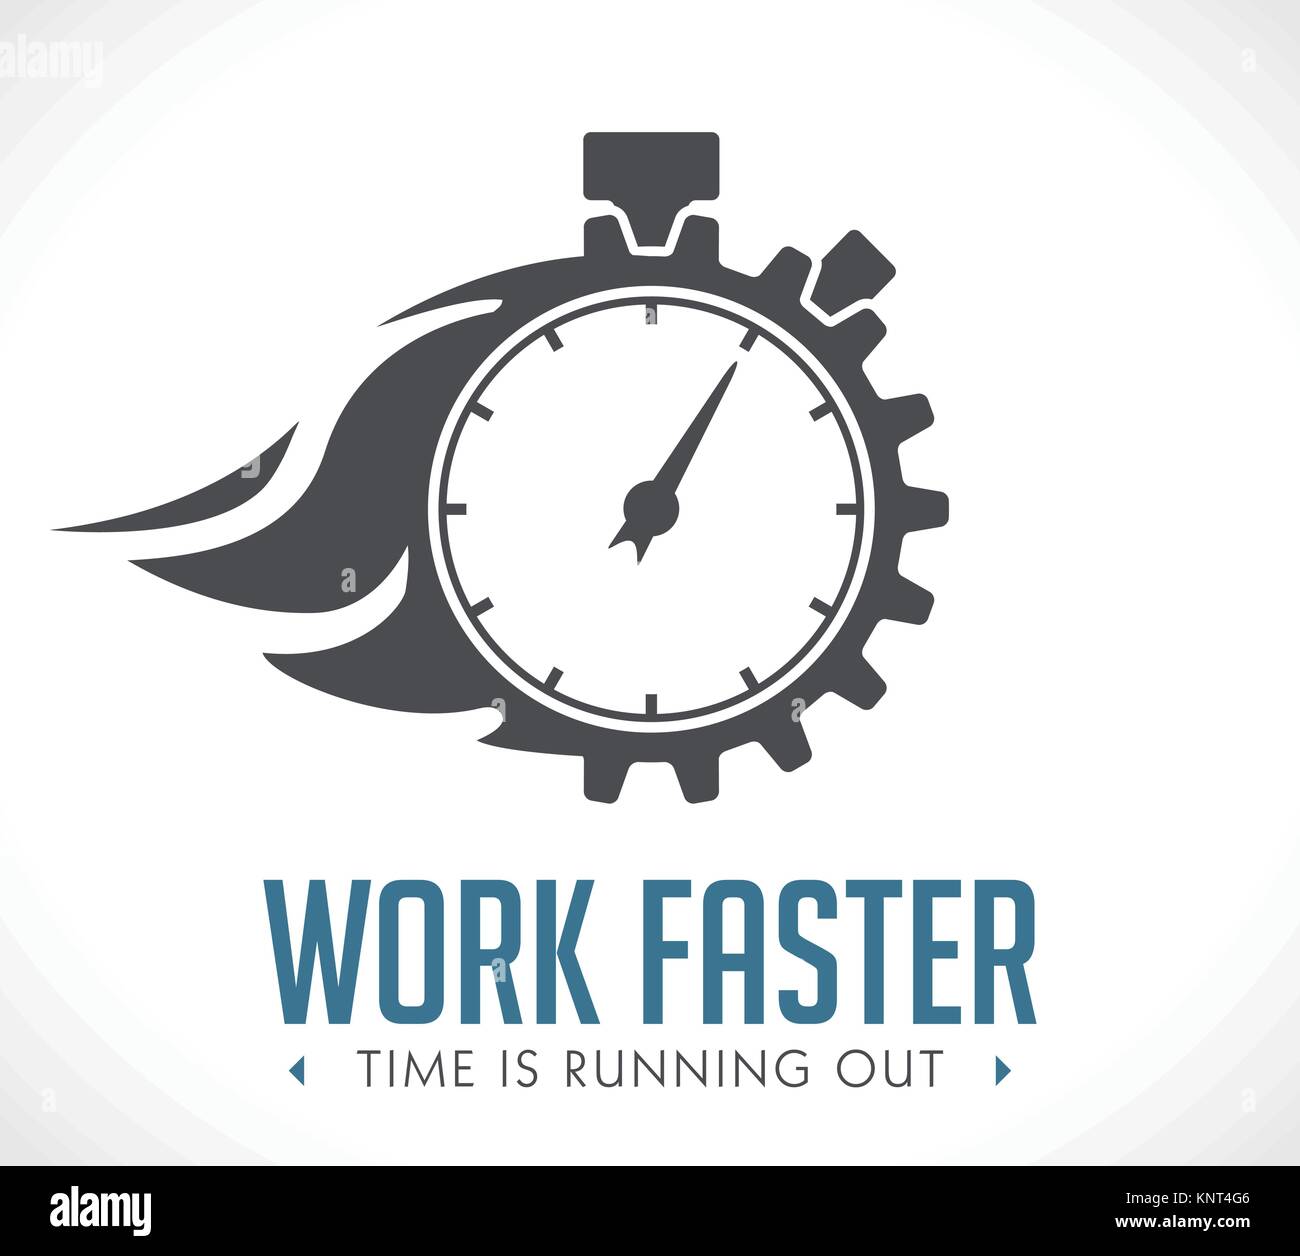 Logo - travaillez plus rapidement - question de l'employeur - concept illustration stock Illustration de Vecteur